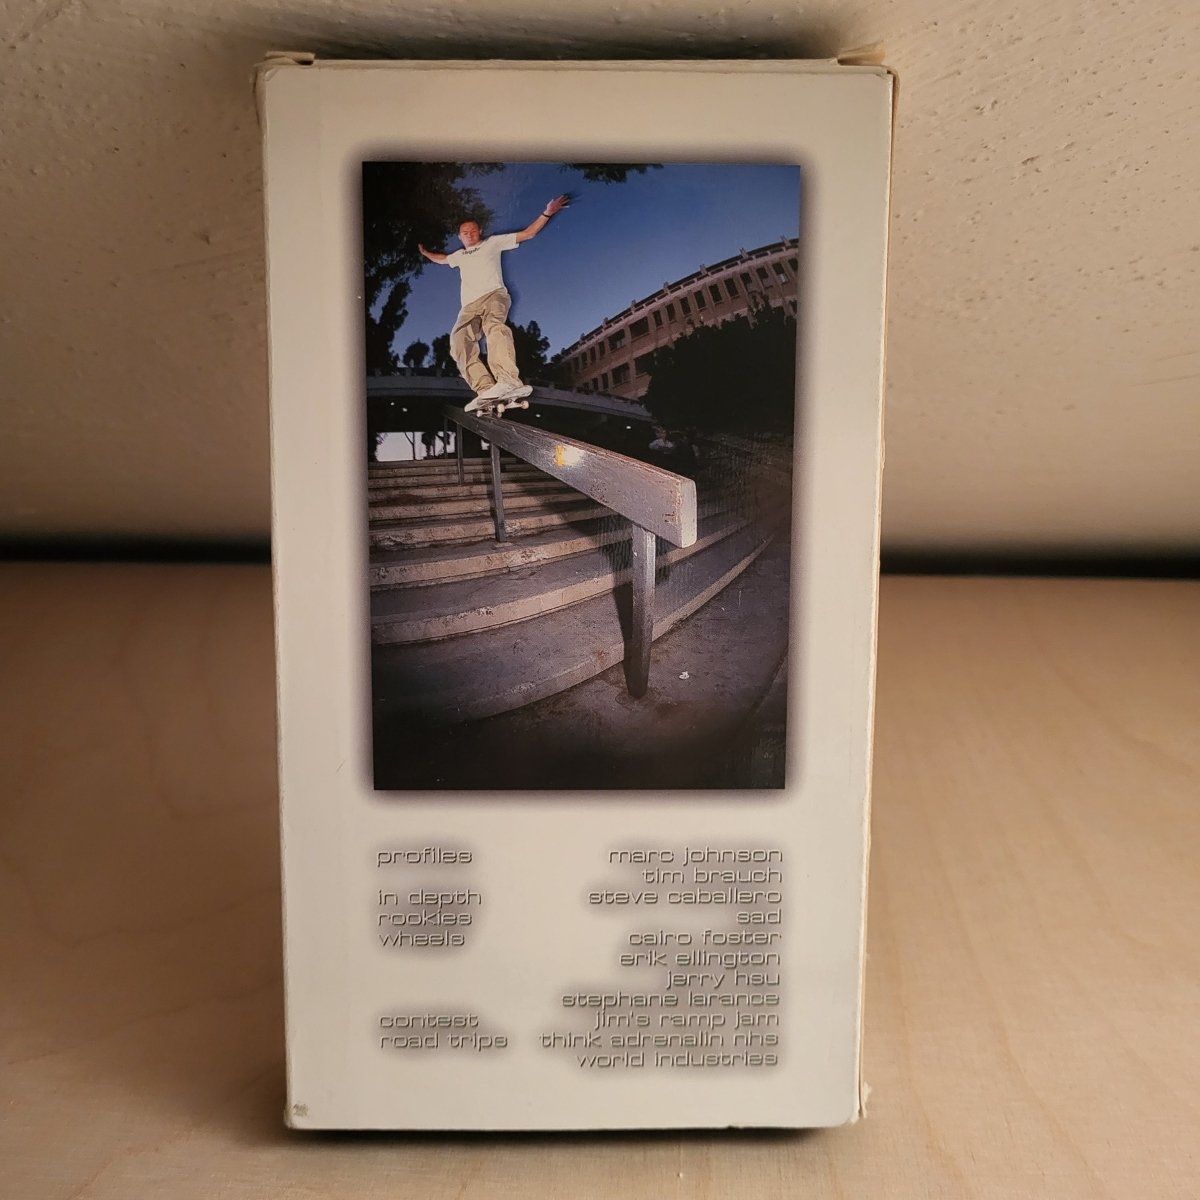 VHS Skatevideo 411VM 20 - 1997 - VHS - Rollbrett Mission